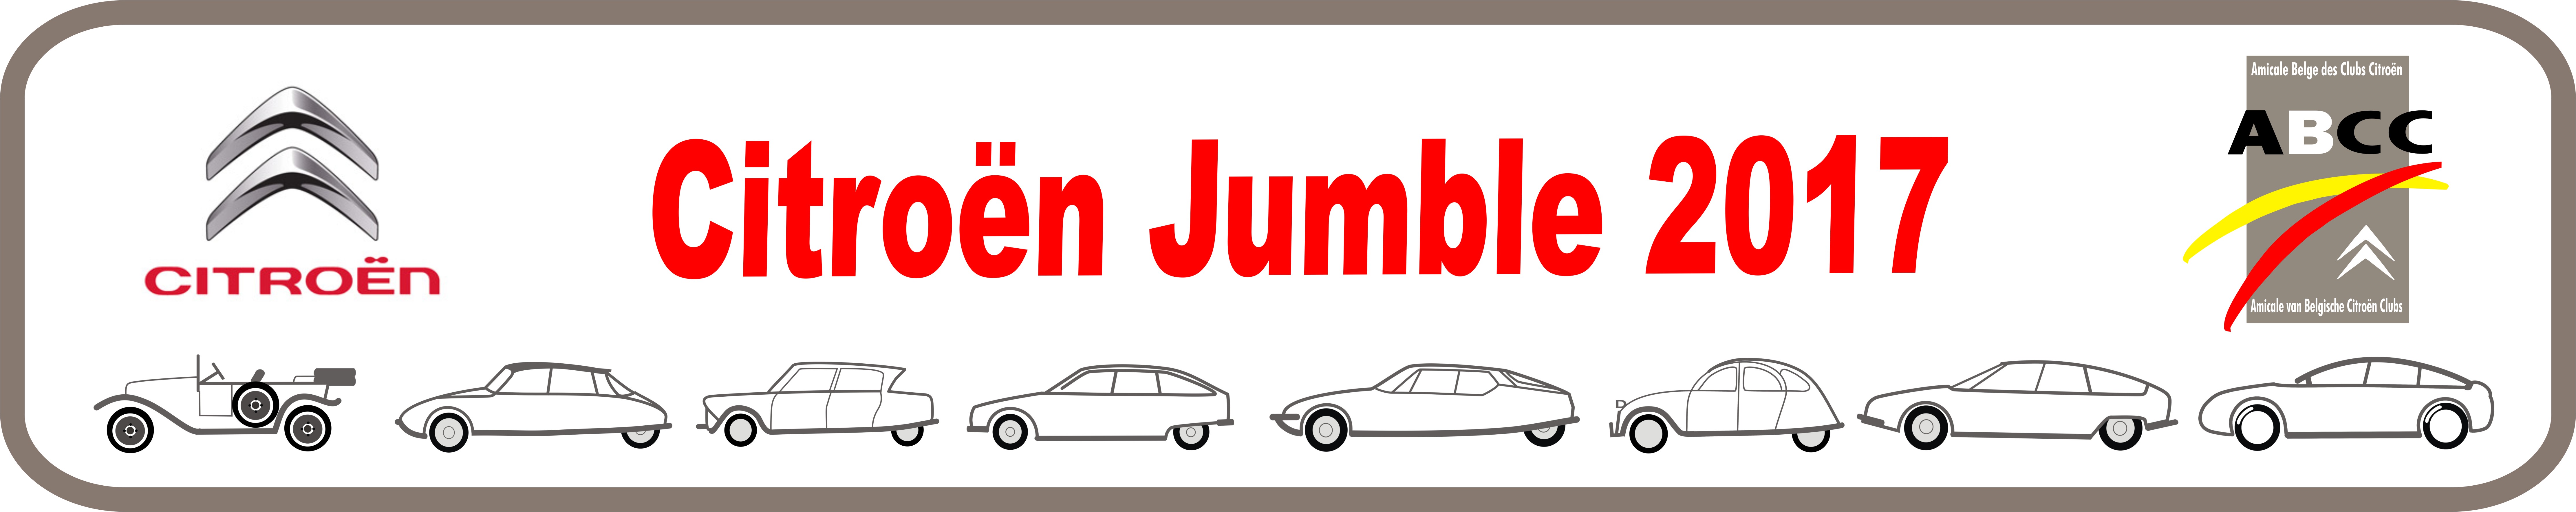 Citroën Jumble